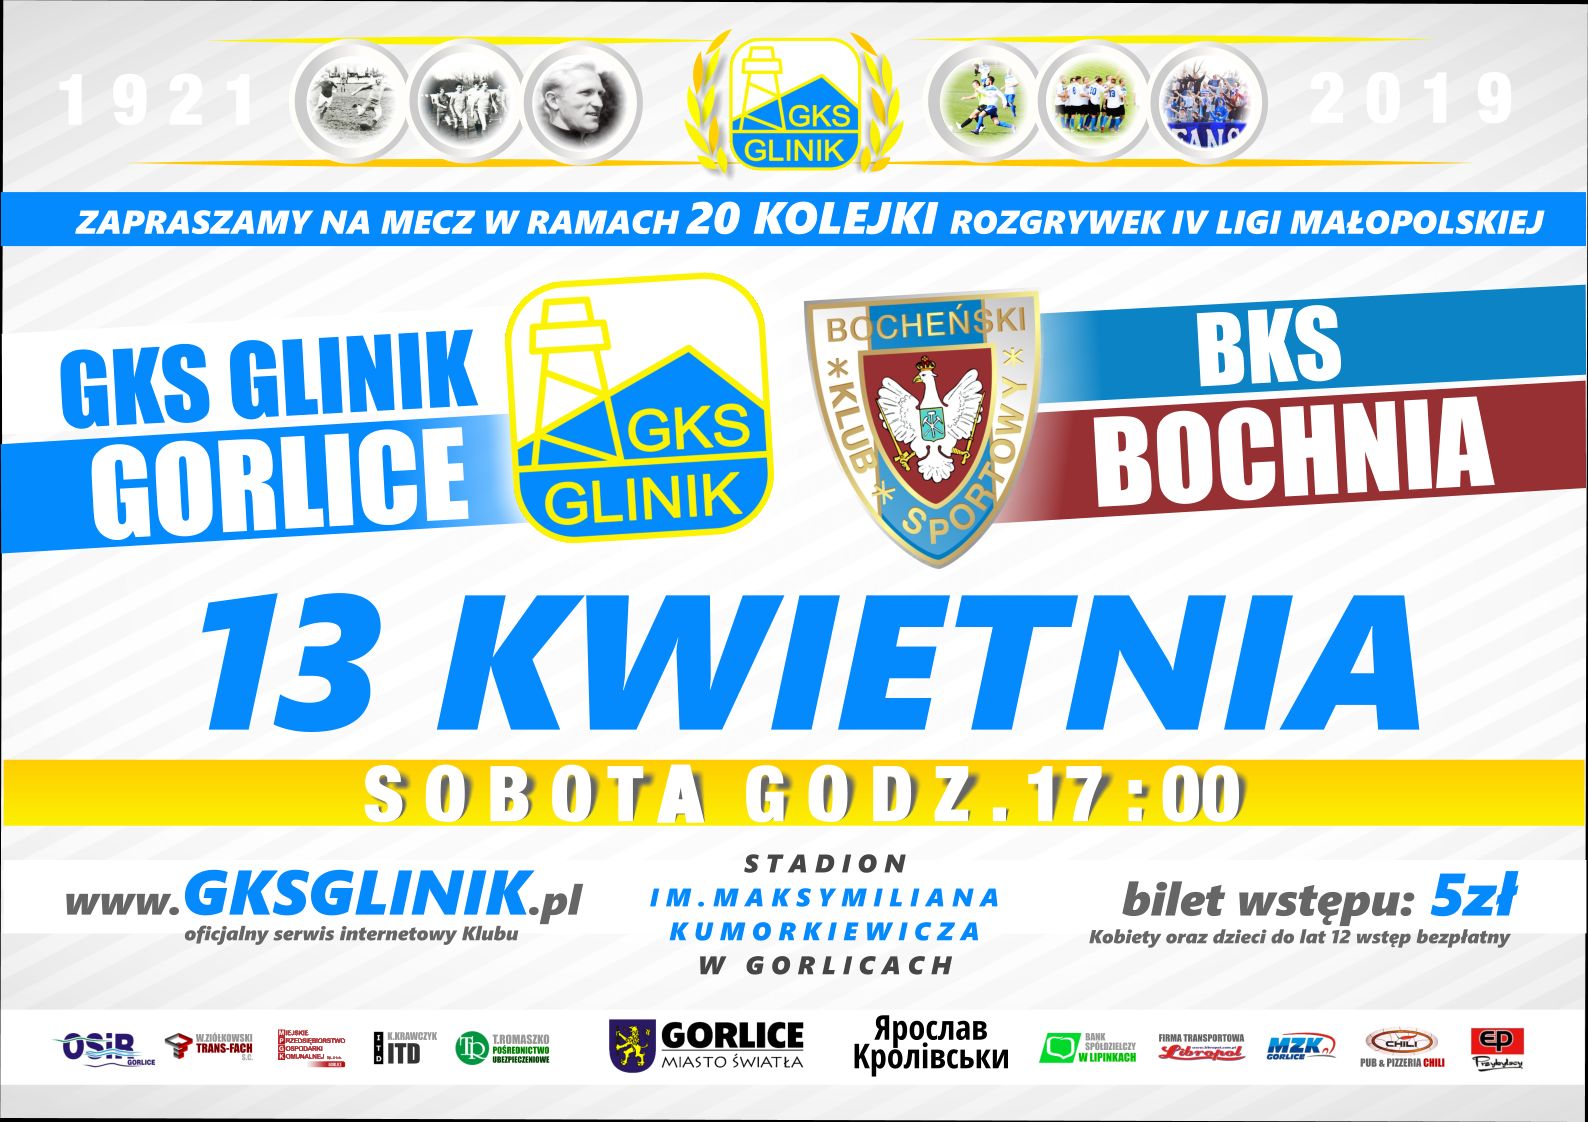 GKS Glinik Gorlice & BKS Bochnia